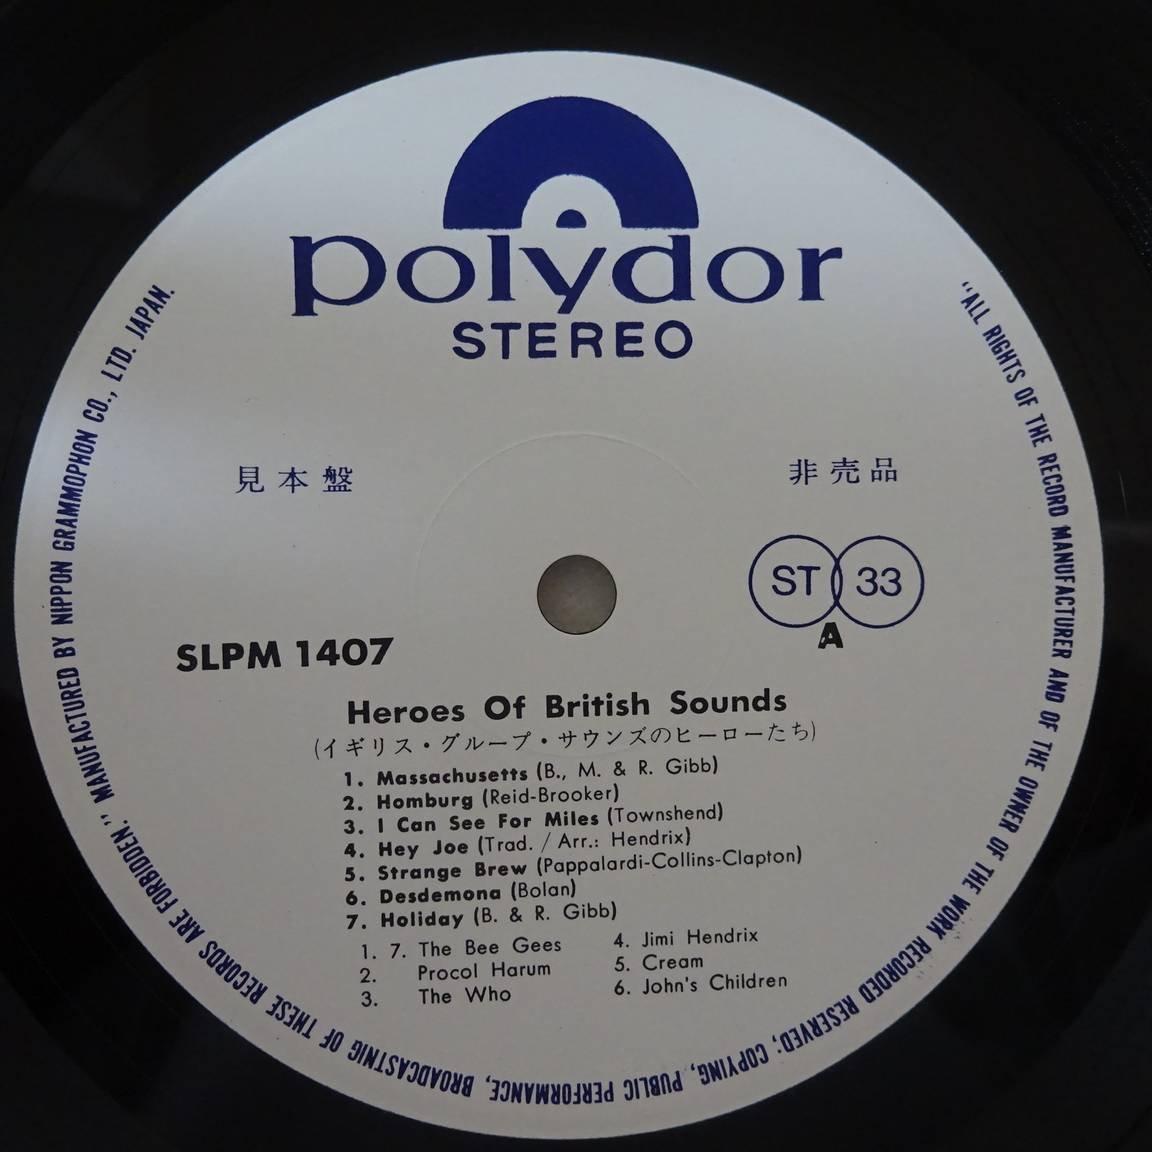 10020026;【国内盤/日本グラモフォン/プロモ白ラベル】Bee Gees, Procol Harum, The Who, Jimi Hendrix, Cream / Heroes Of British Sounds_画像3